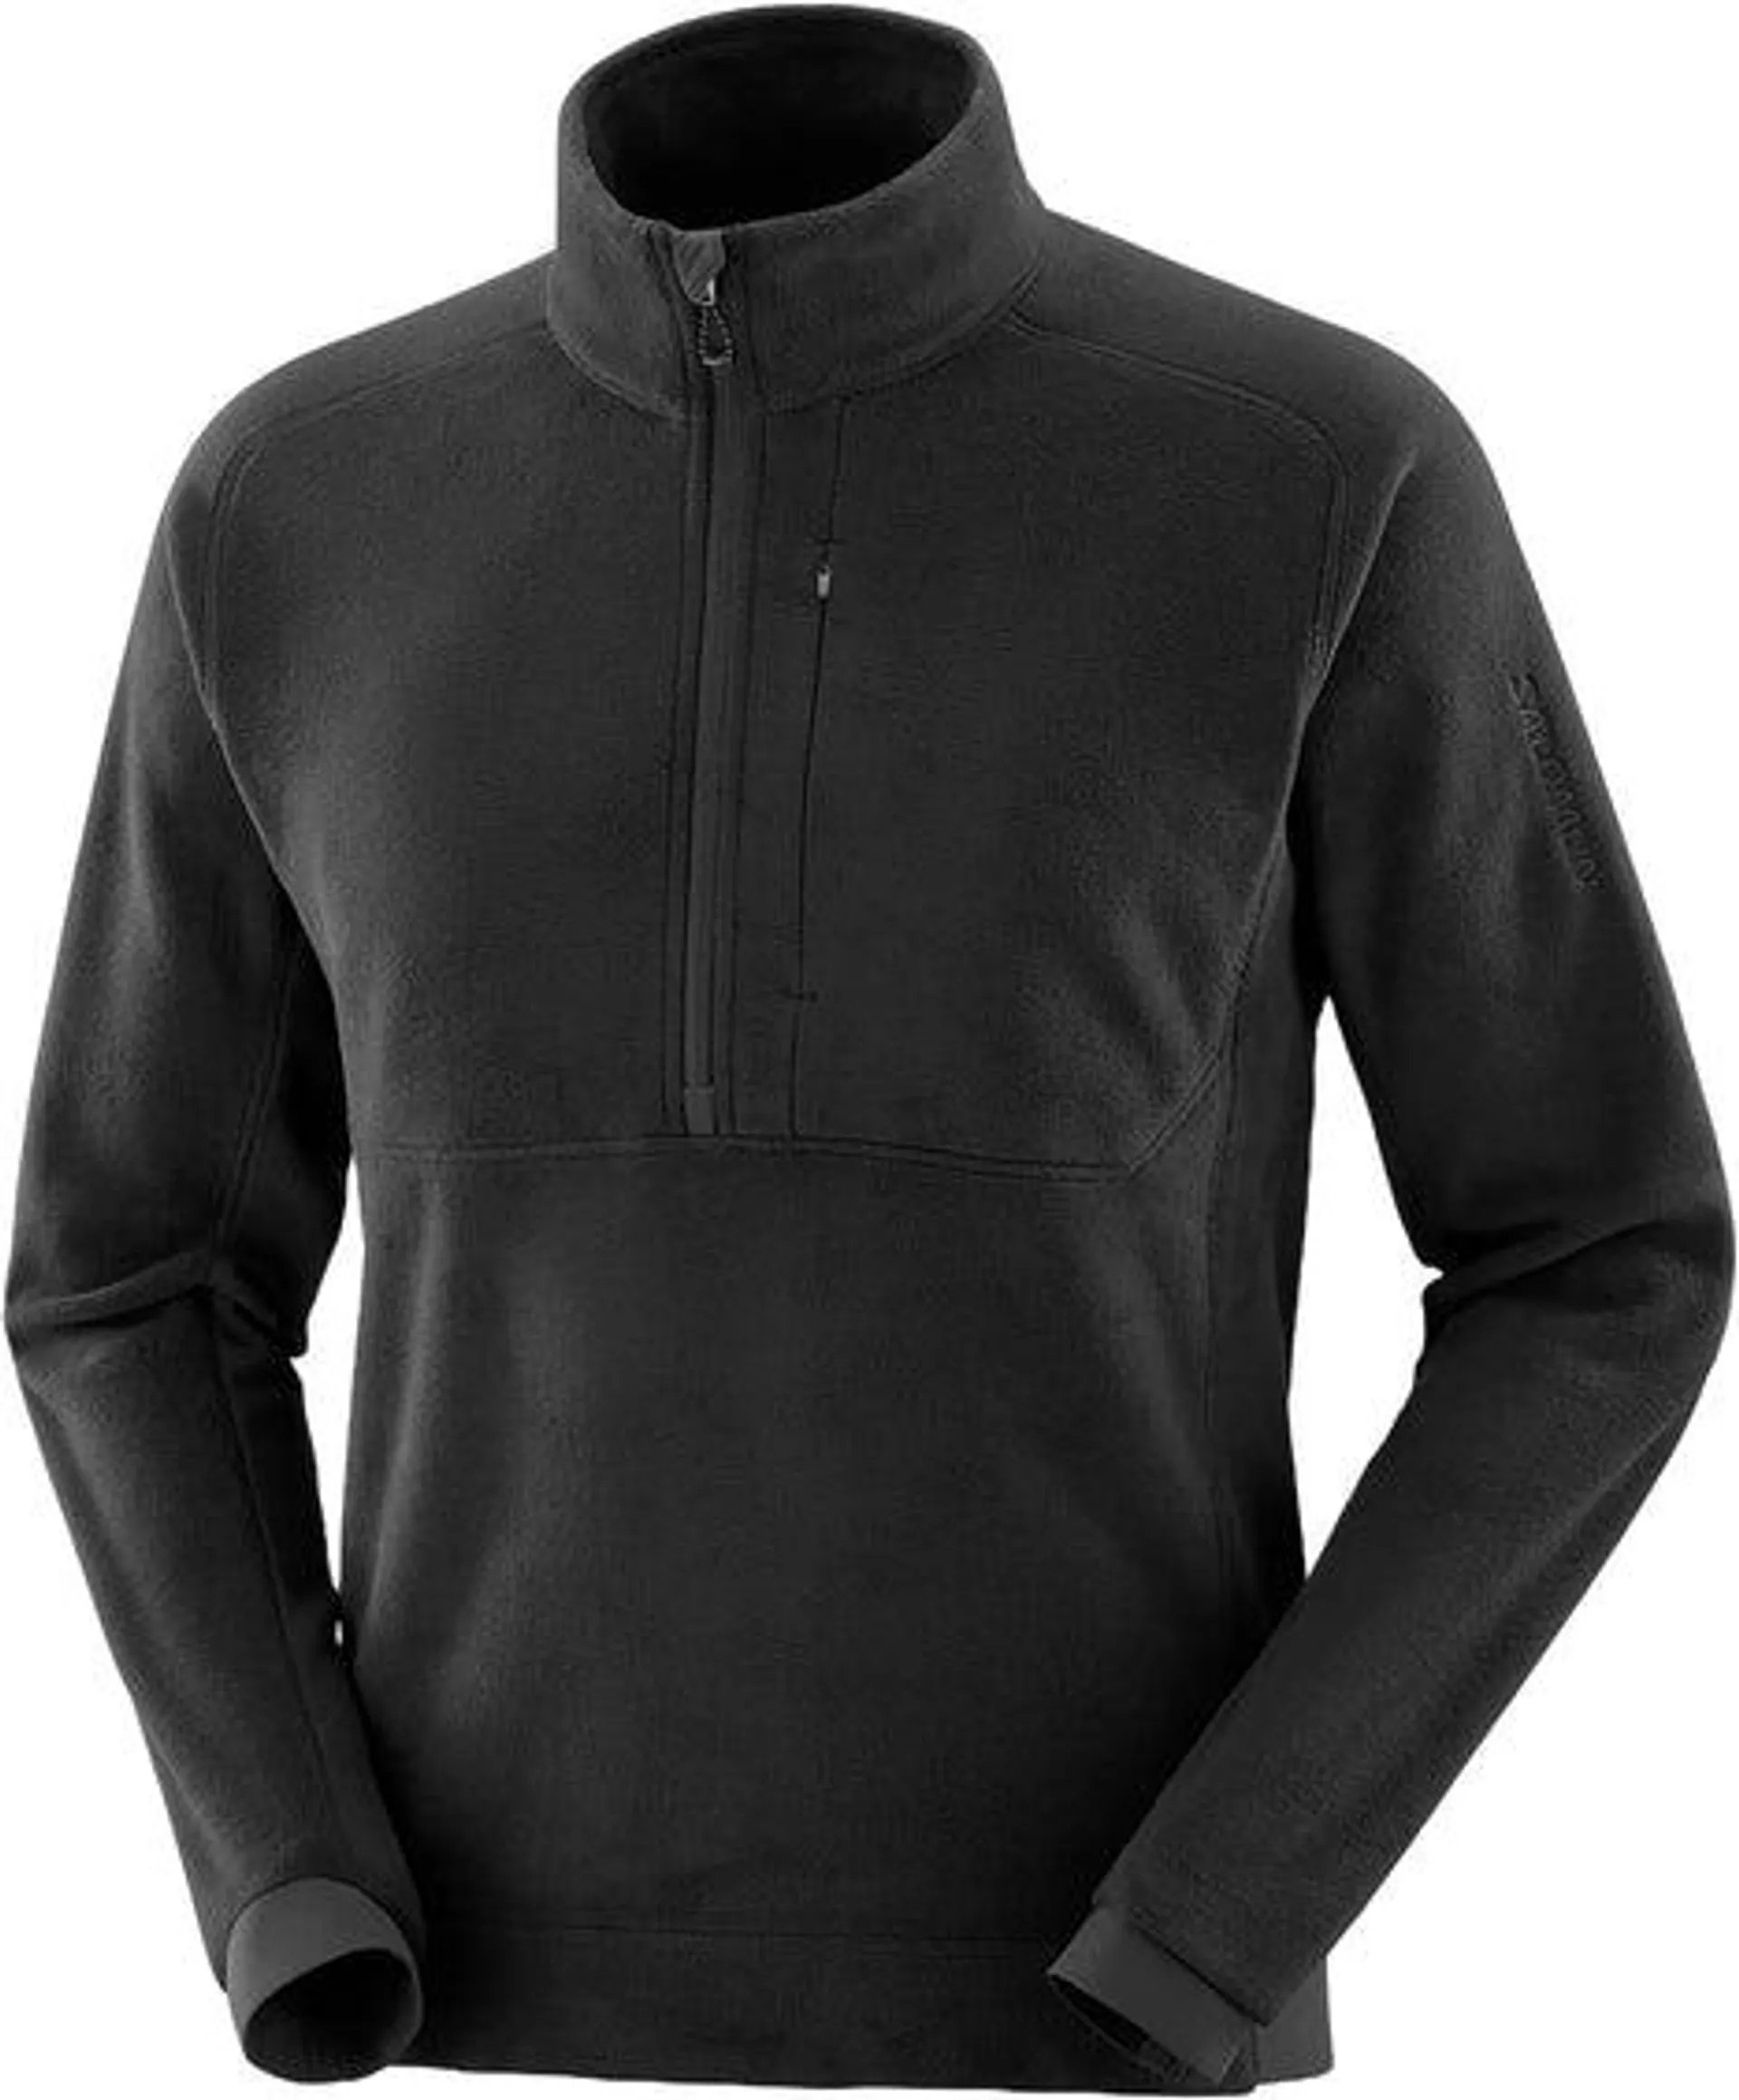 Essential Micro Fleece Half-Zip Midlayer Jacket - Men's